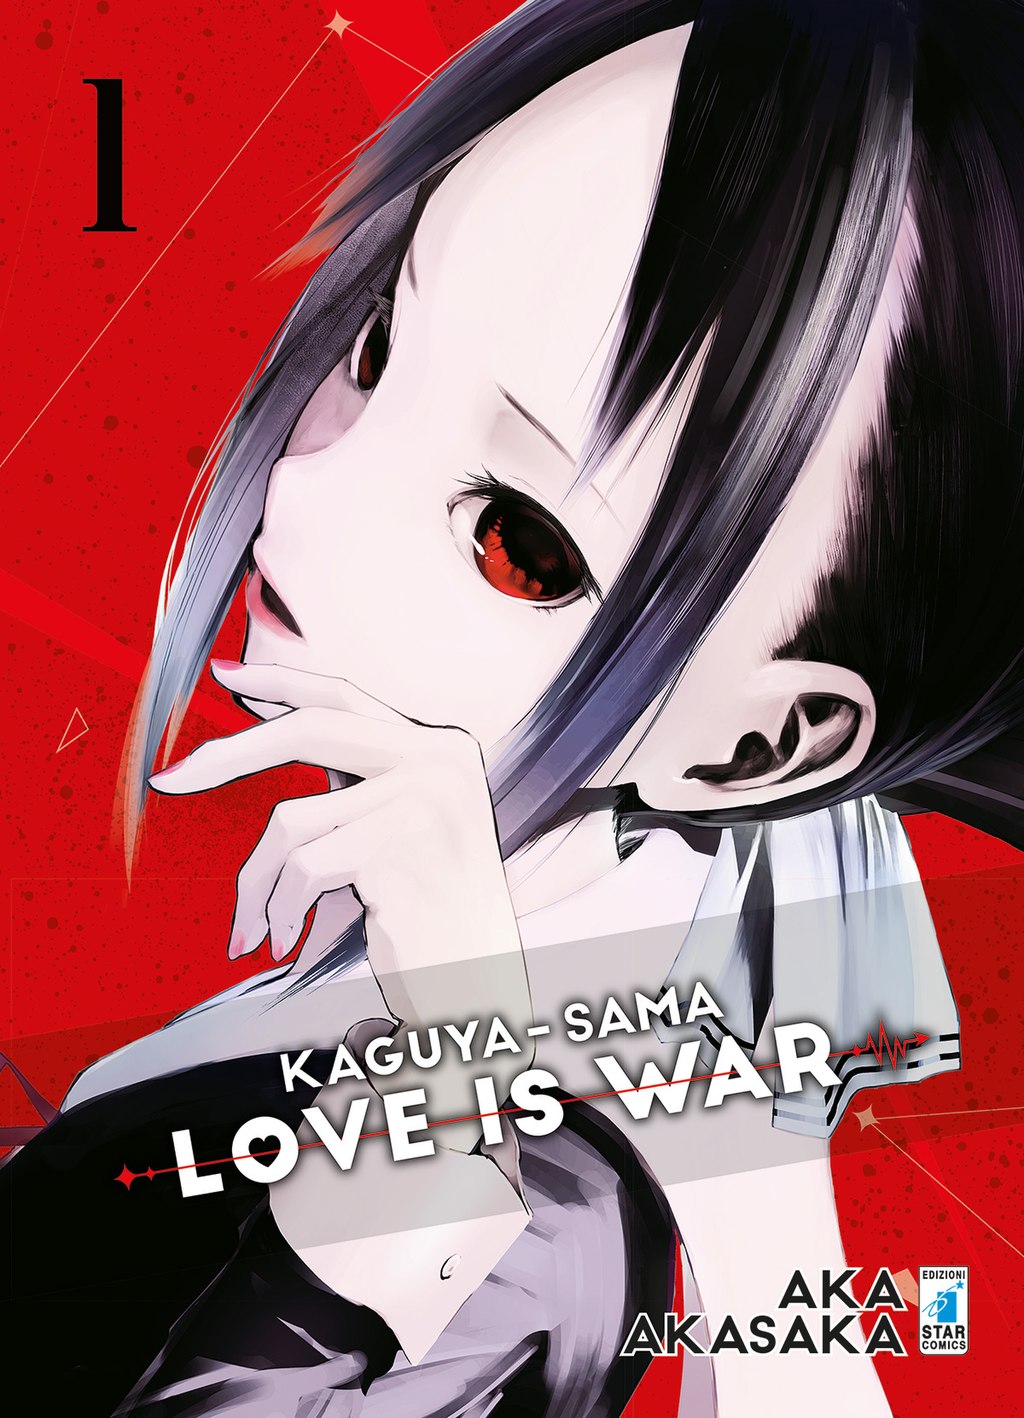 Kaguya-Sama love is war